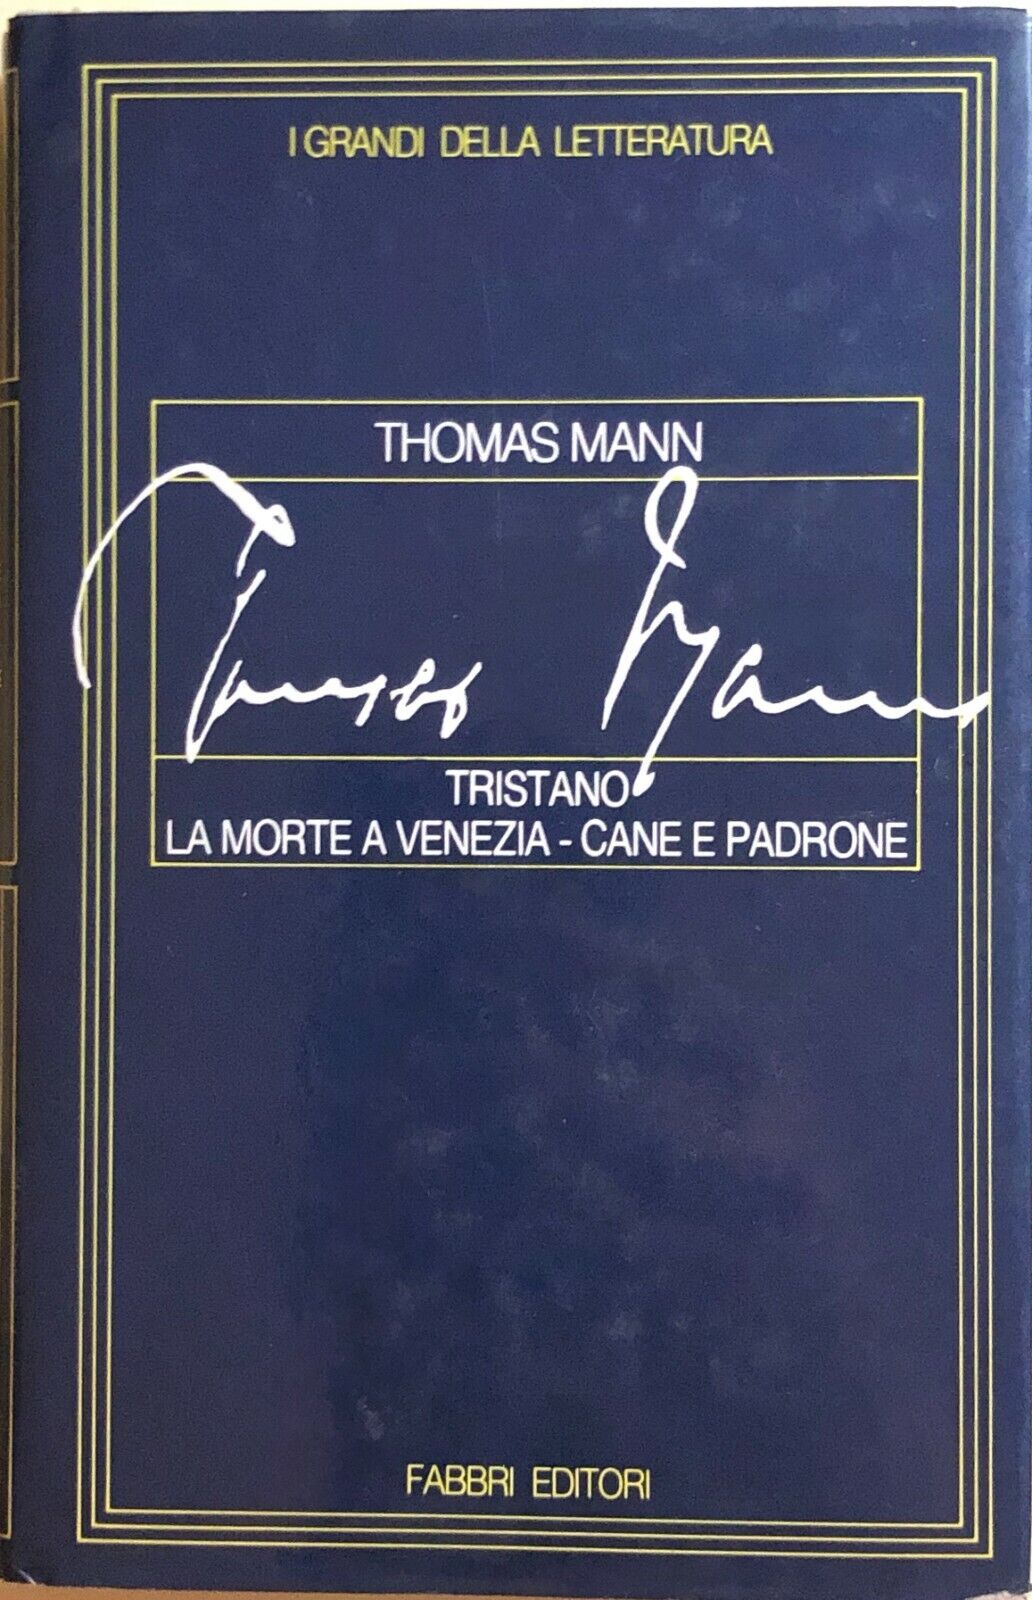 Tristano-La morte a Venezia-Cane e padrone di Thomas Mann, 1987, Fabbri Editore